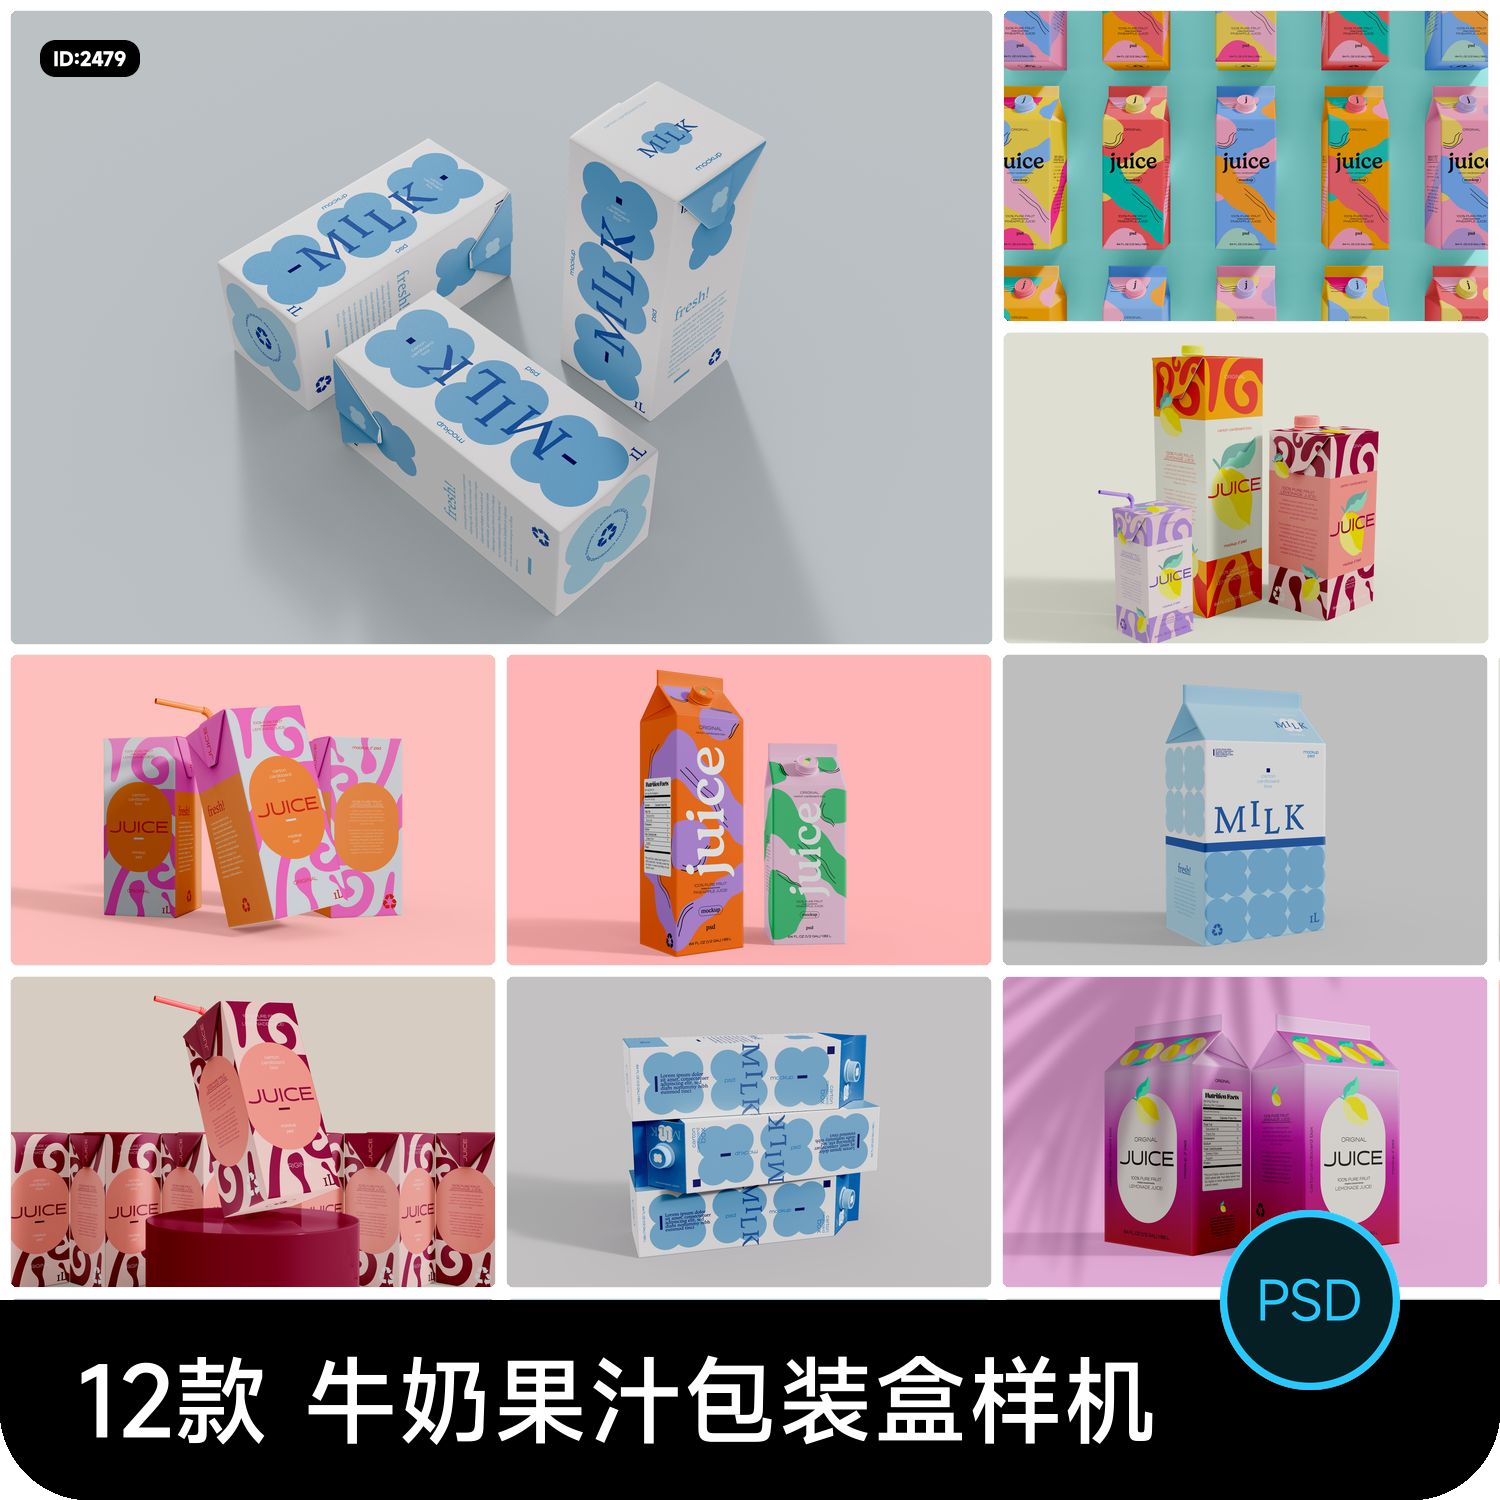 牛奶果汁饮品饮料包装盒logo印花效果展示vi贴图样机psd设计素材